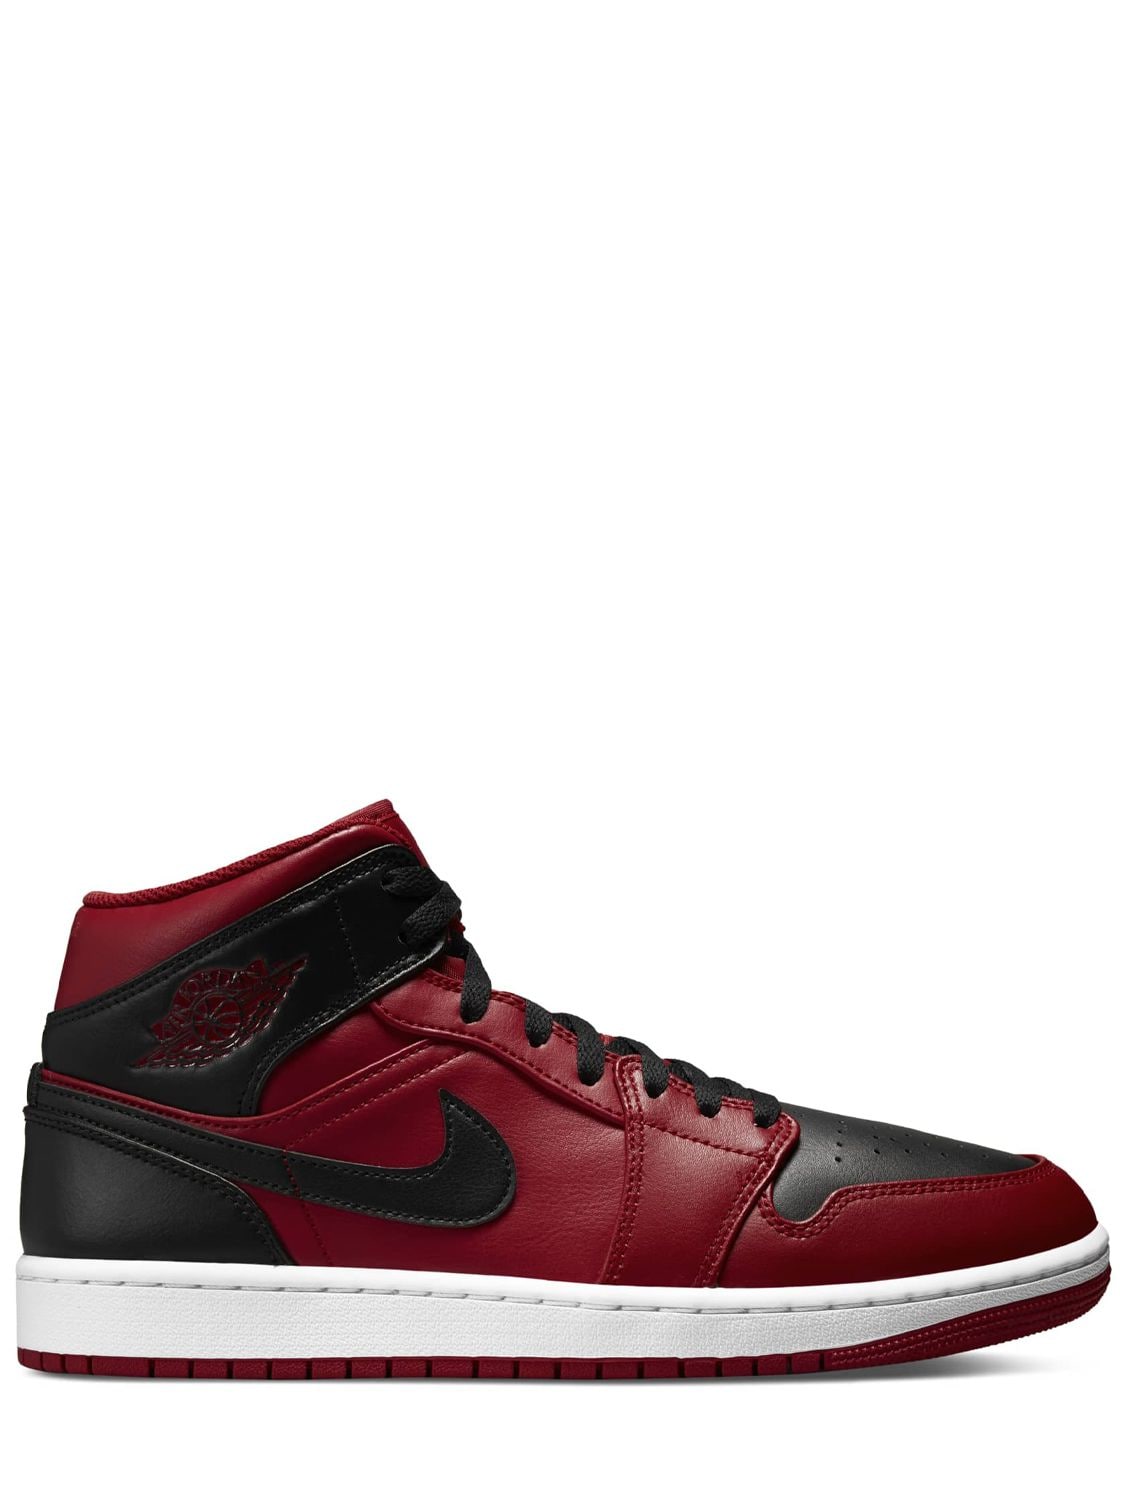 Image of Air Jordan 1 Mid Sneakers